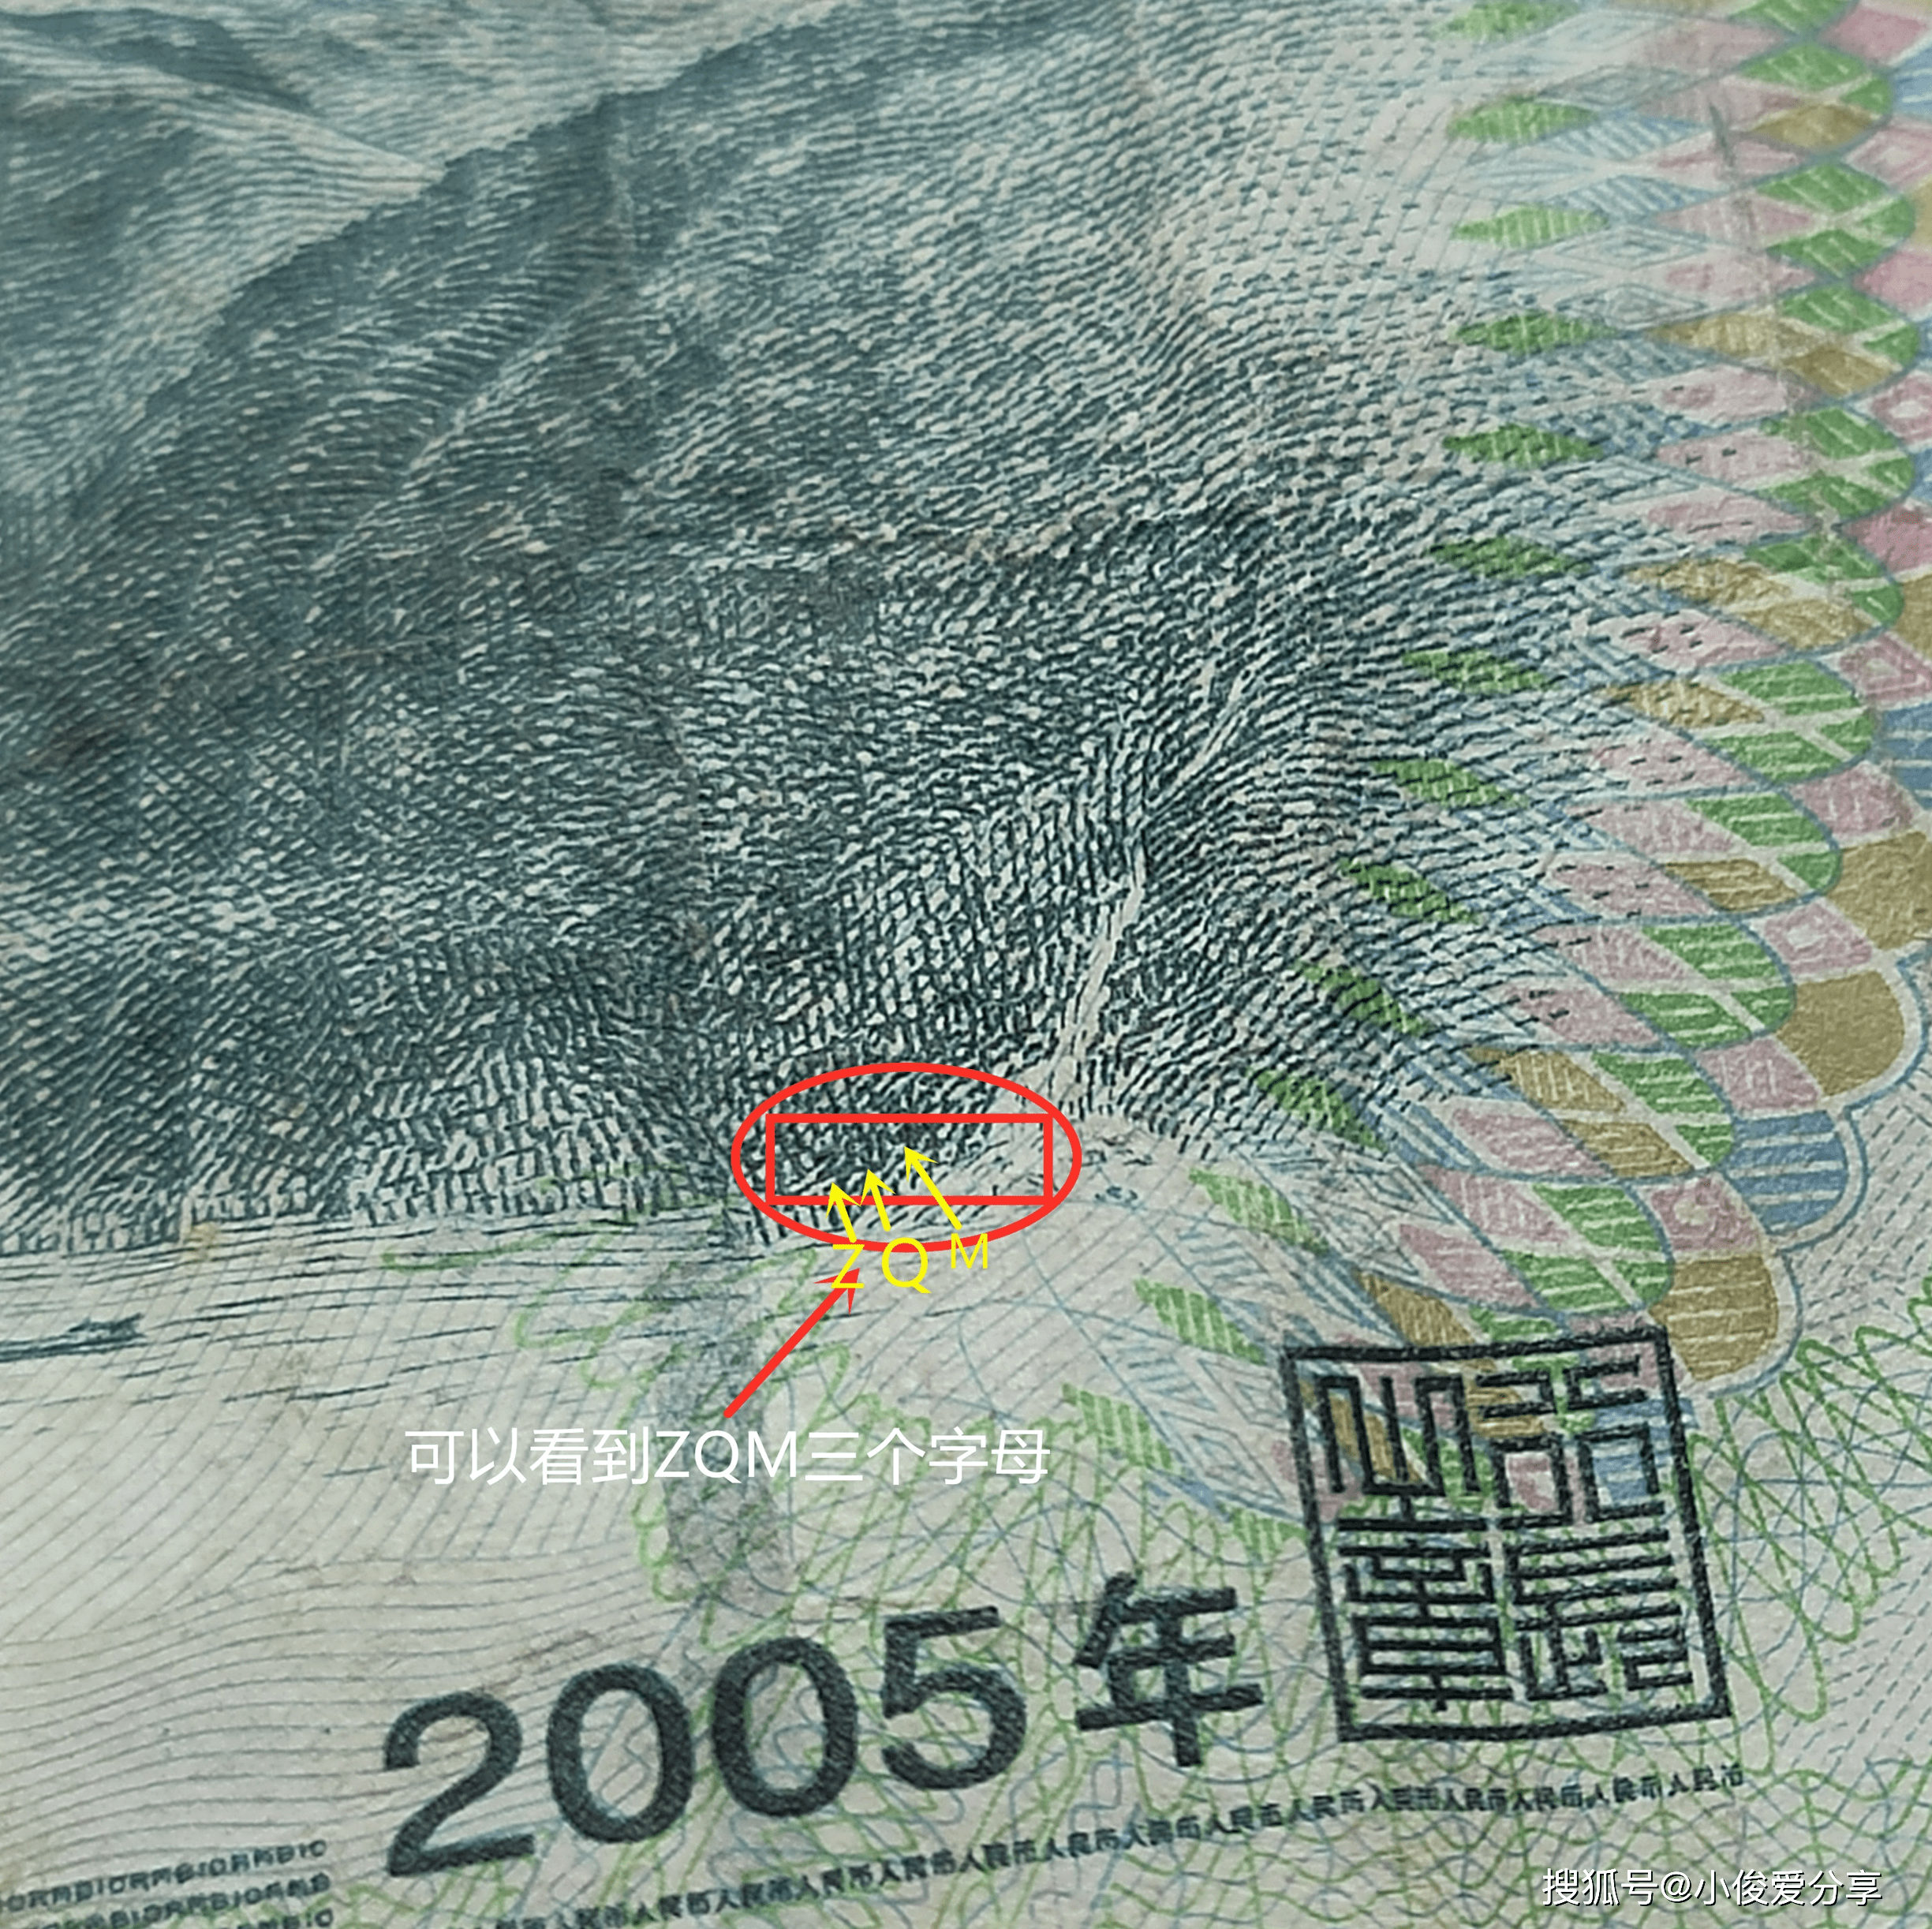 今天才知道,10元人民币后面还有另一个人的名字,竟然不是毛爷爷